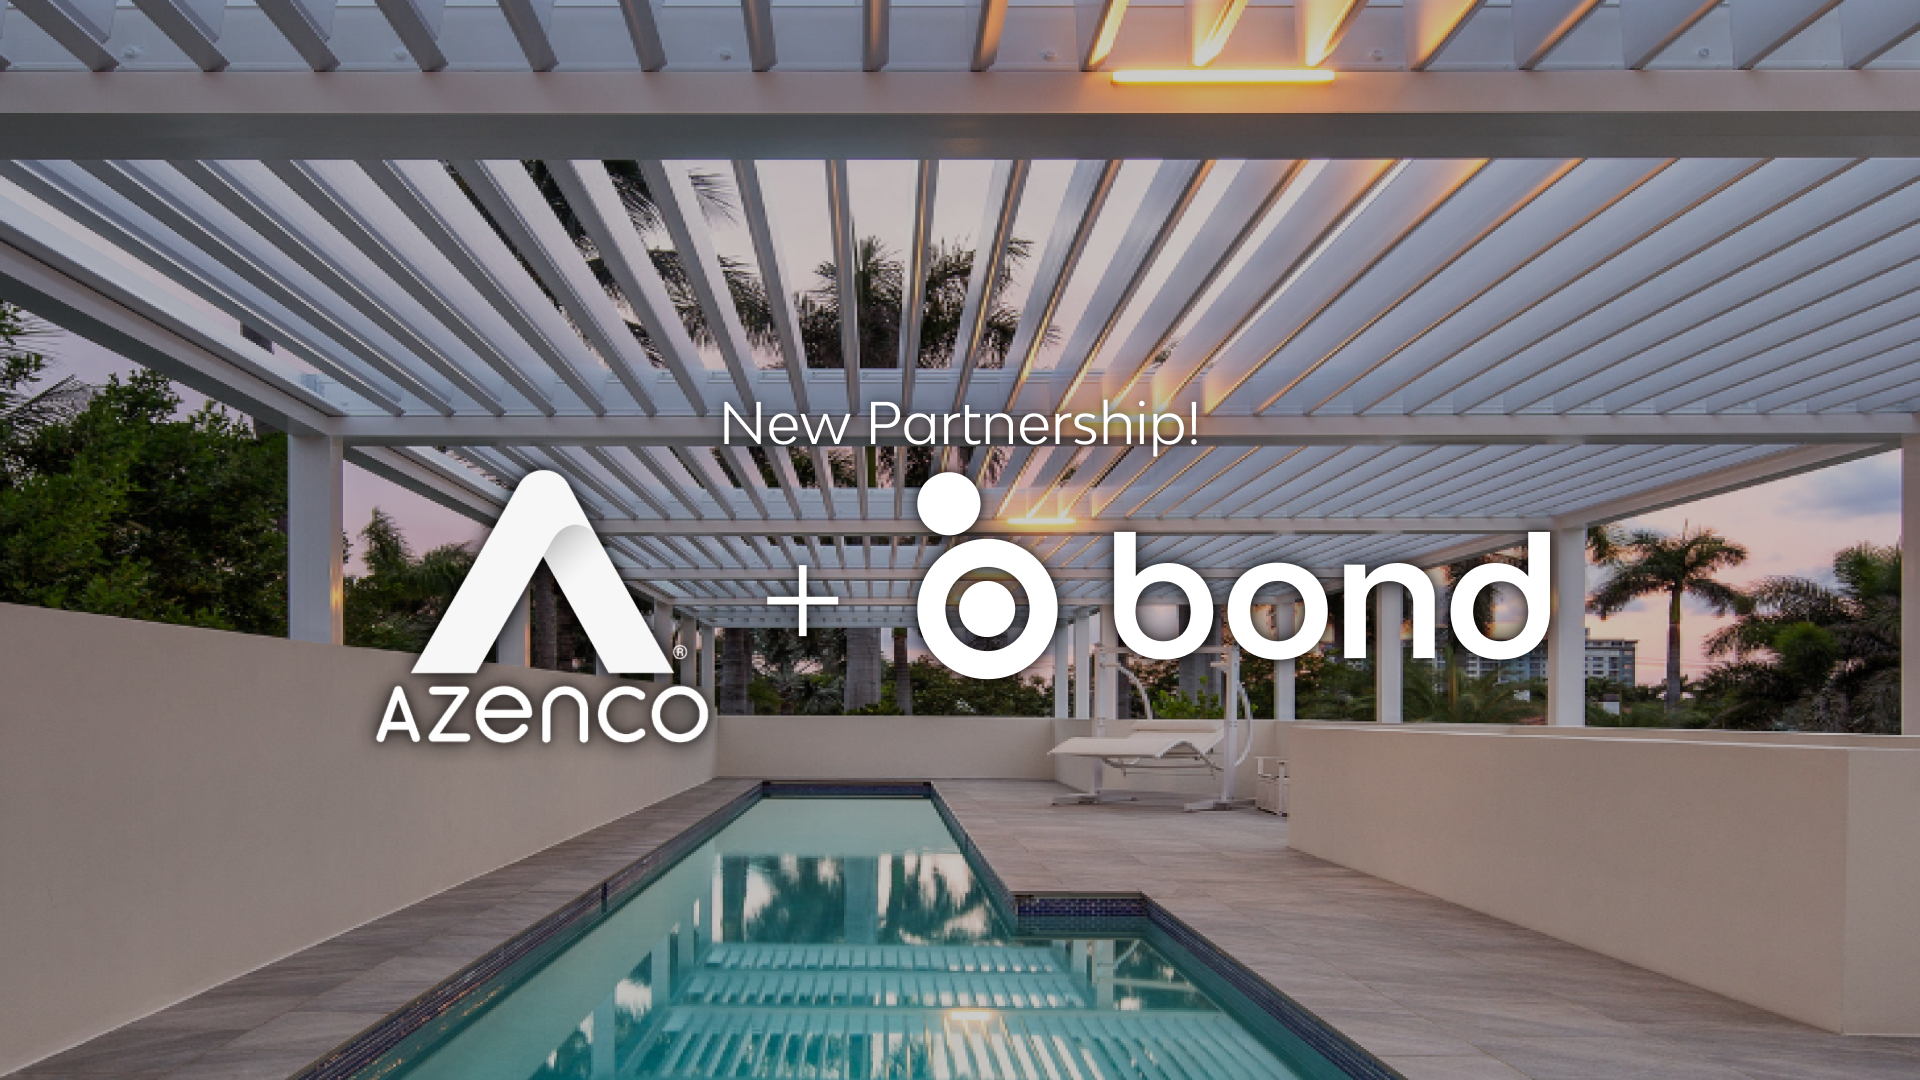 New partnership! Azenco Outdoor